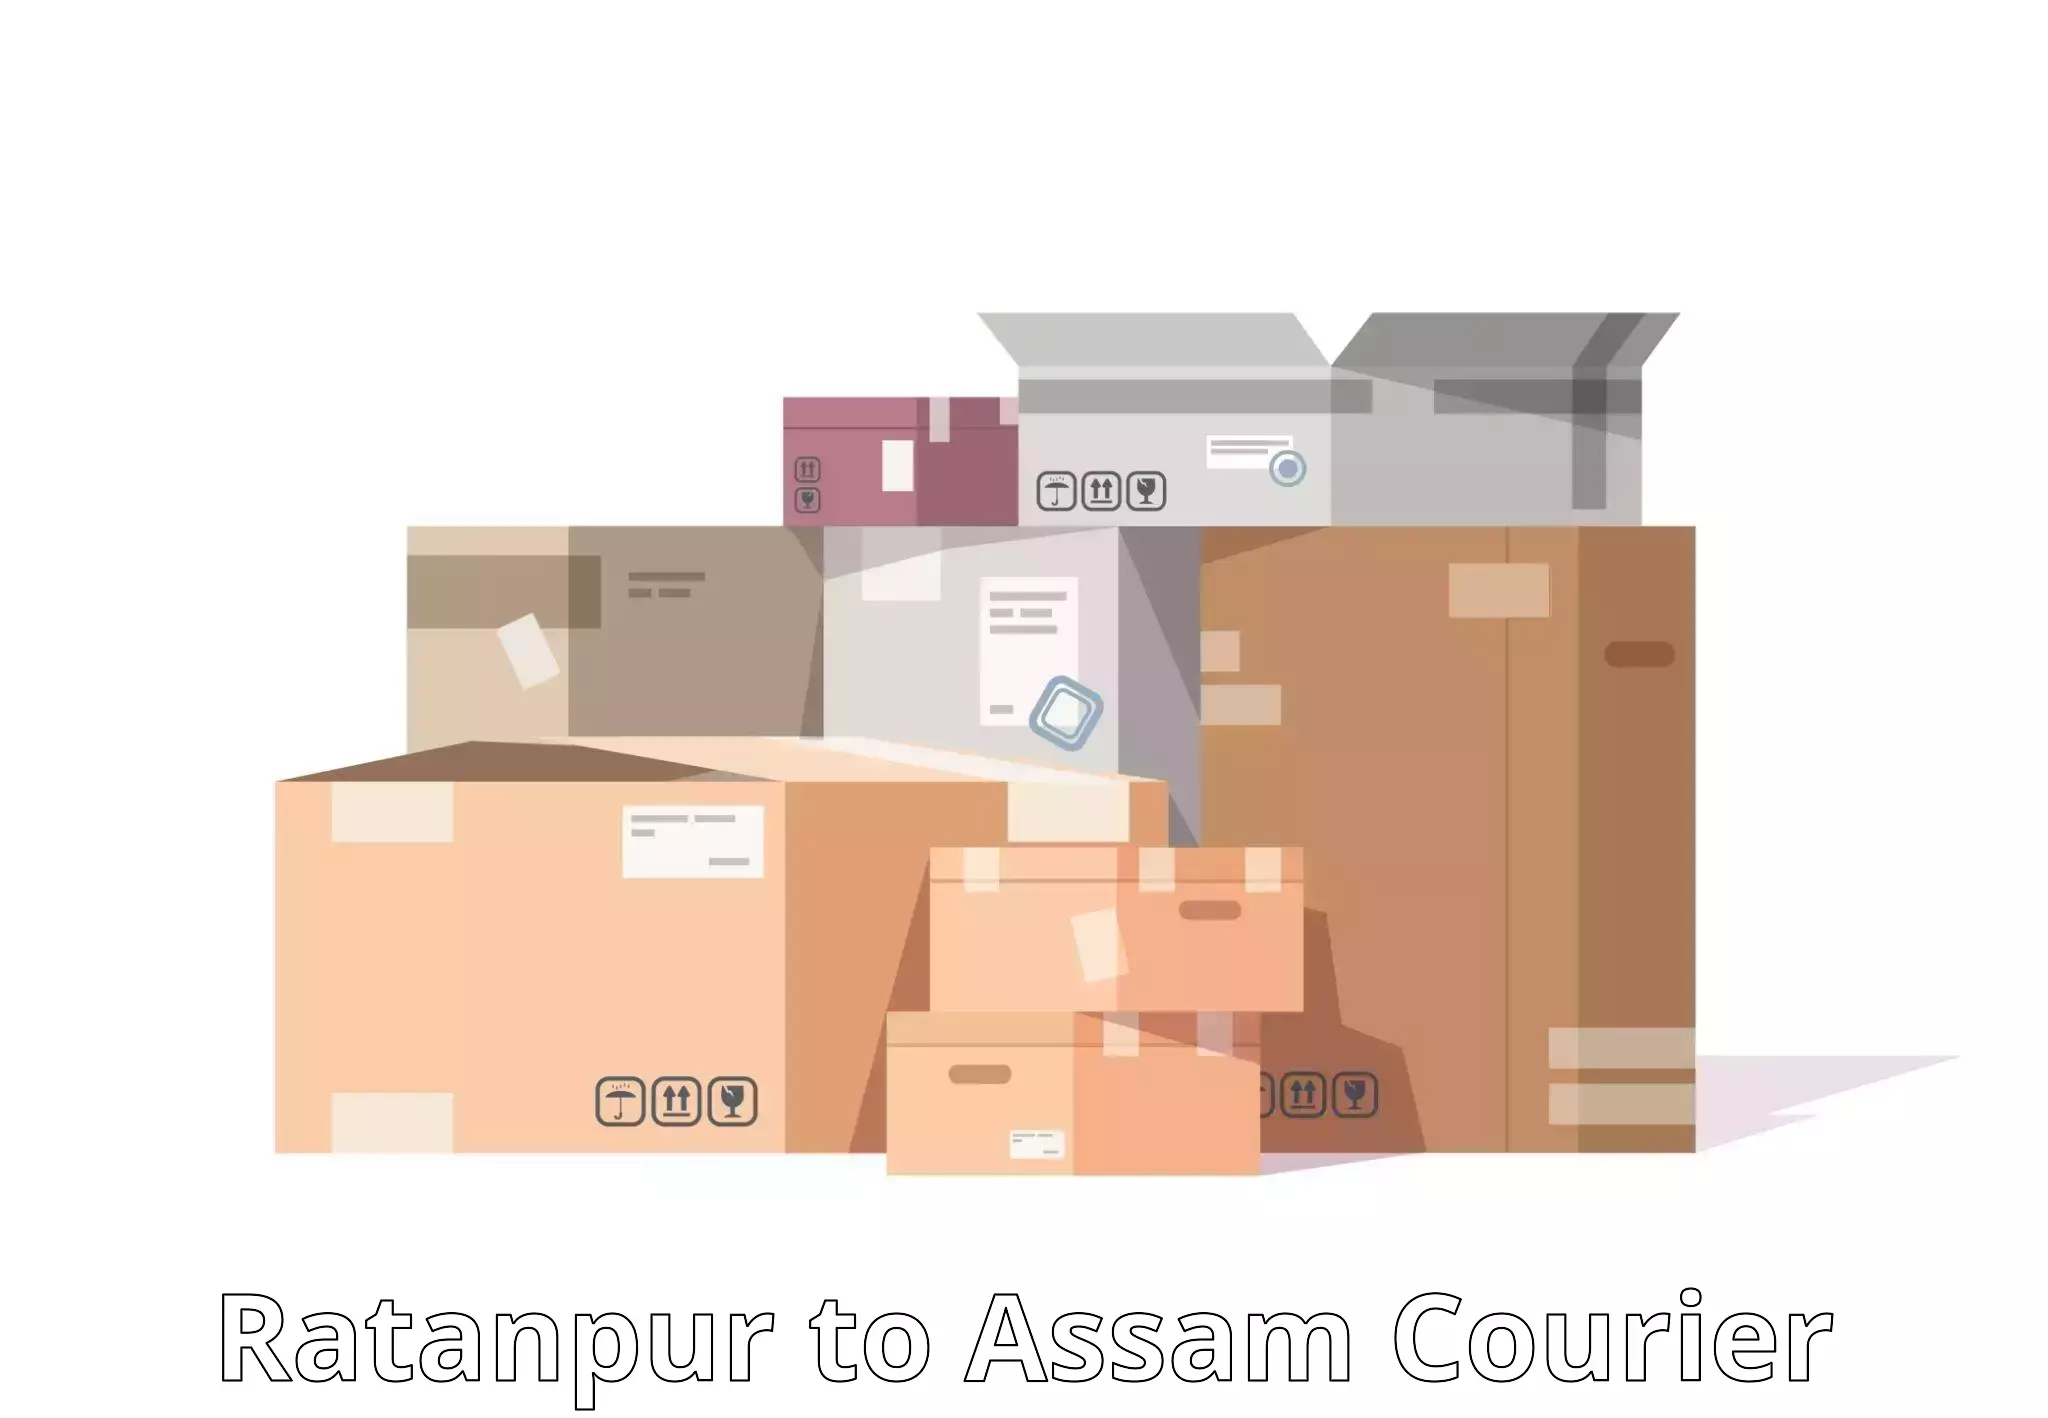 Smart logistics strategies Ratanpur to Lala Assam